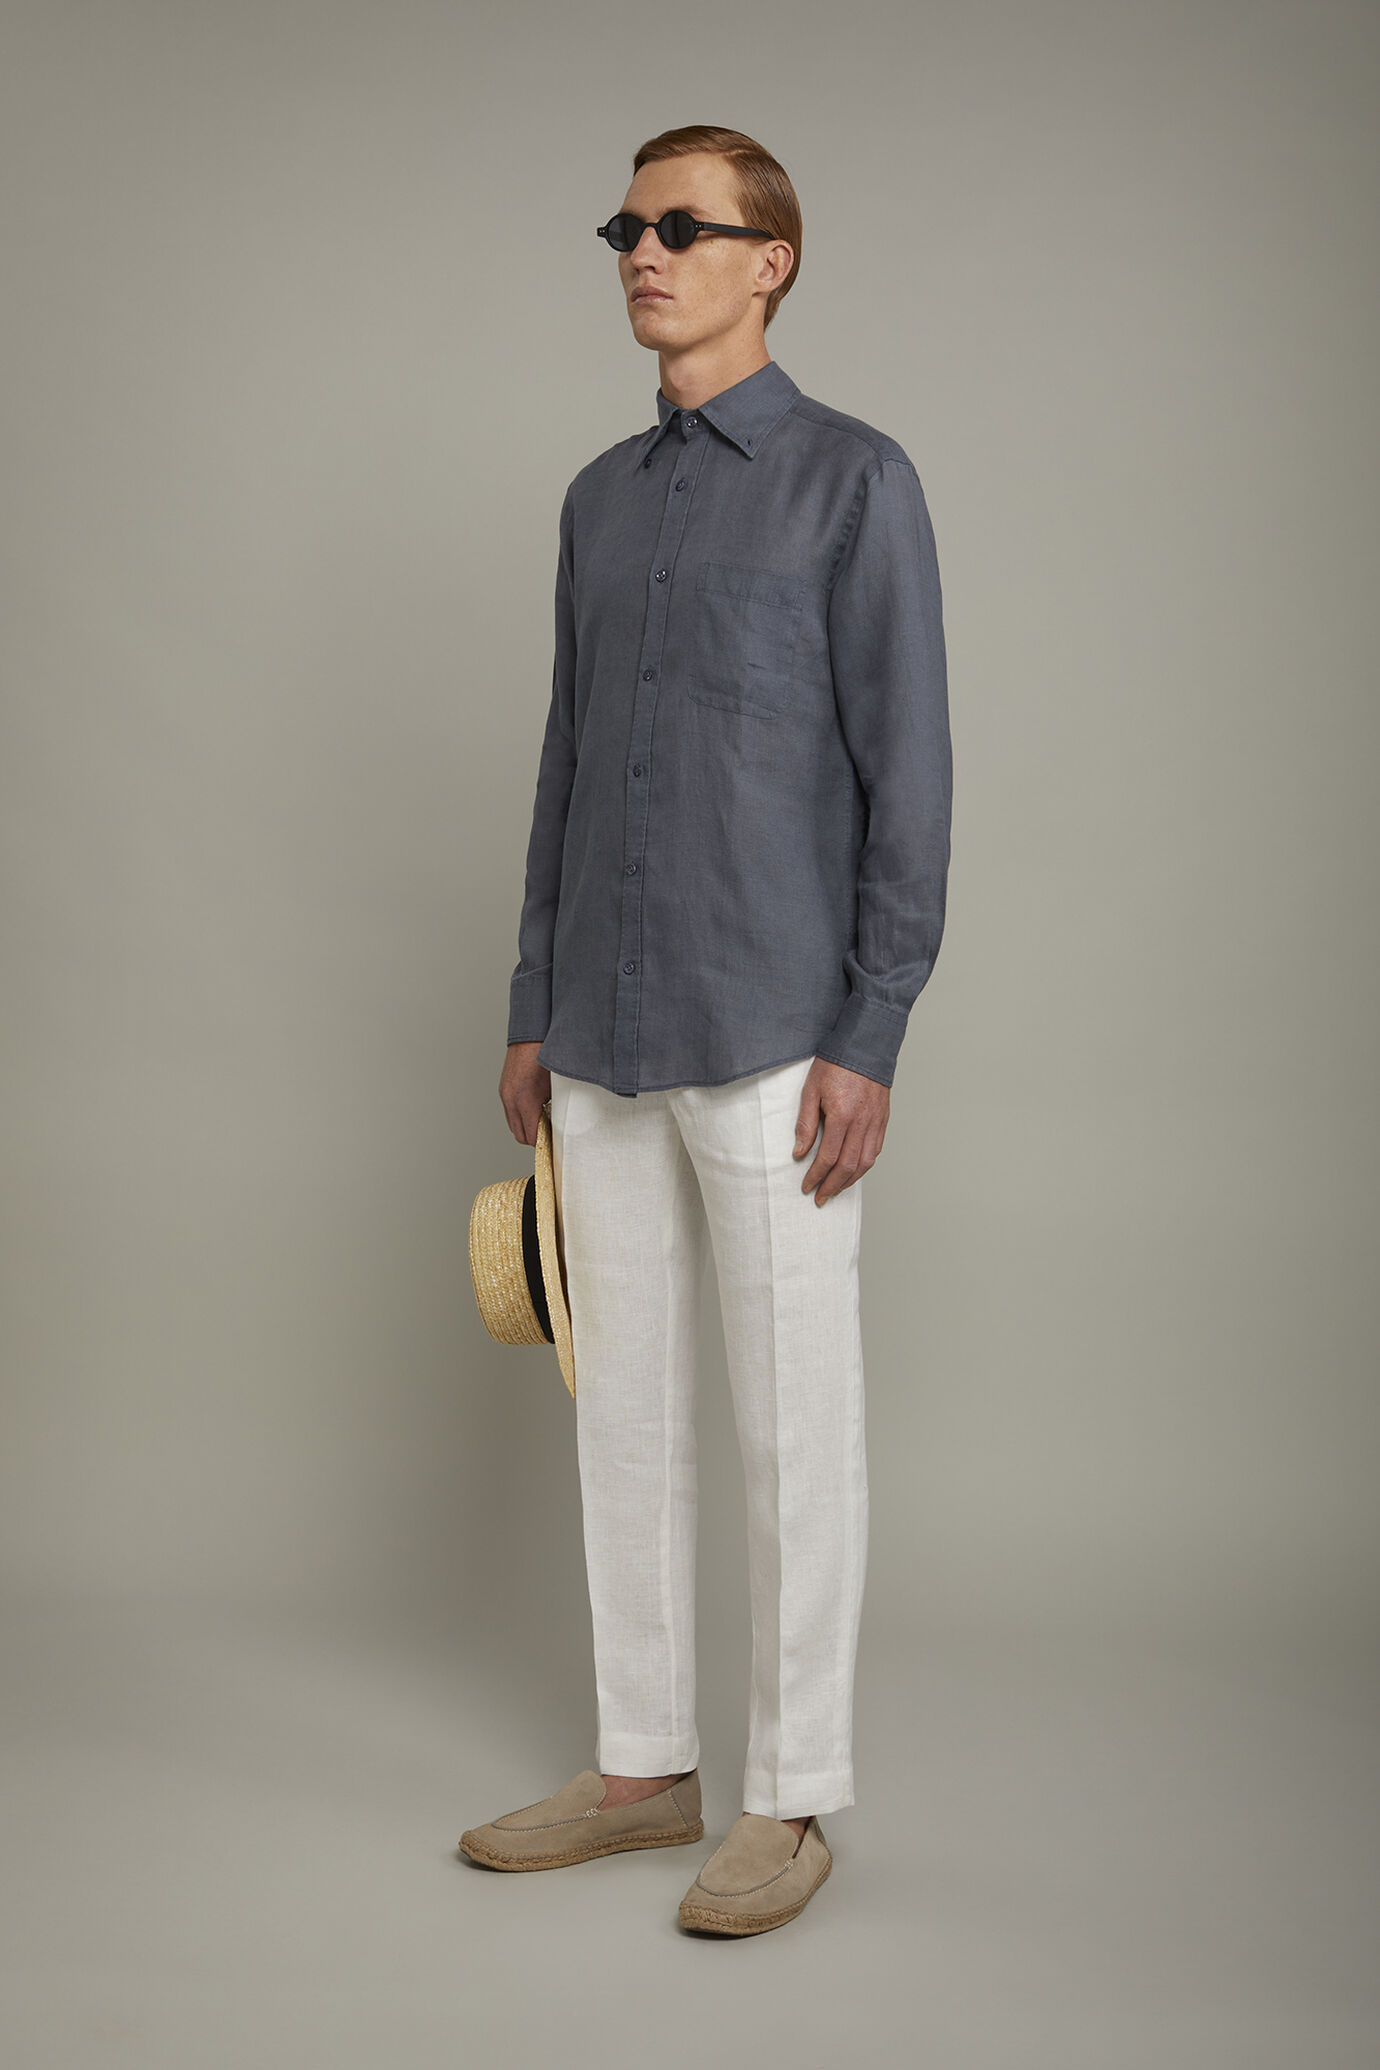 Pantalone chino 100% lino regular fit image number 1